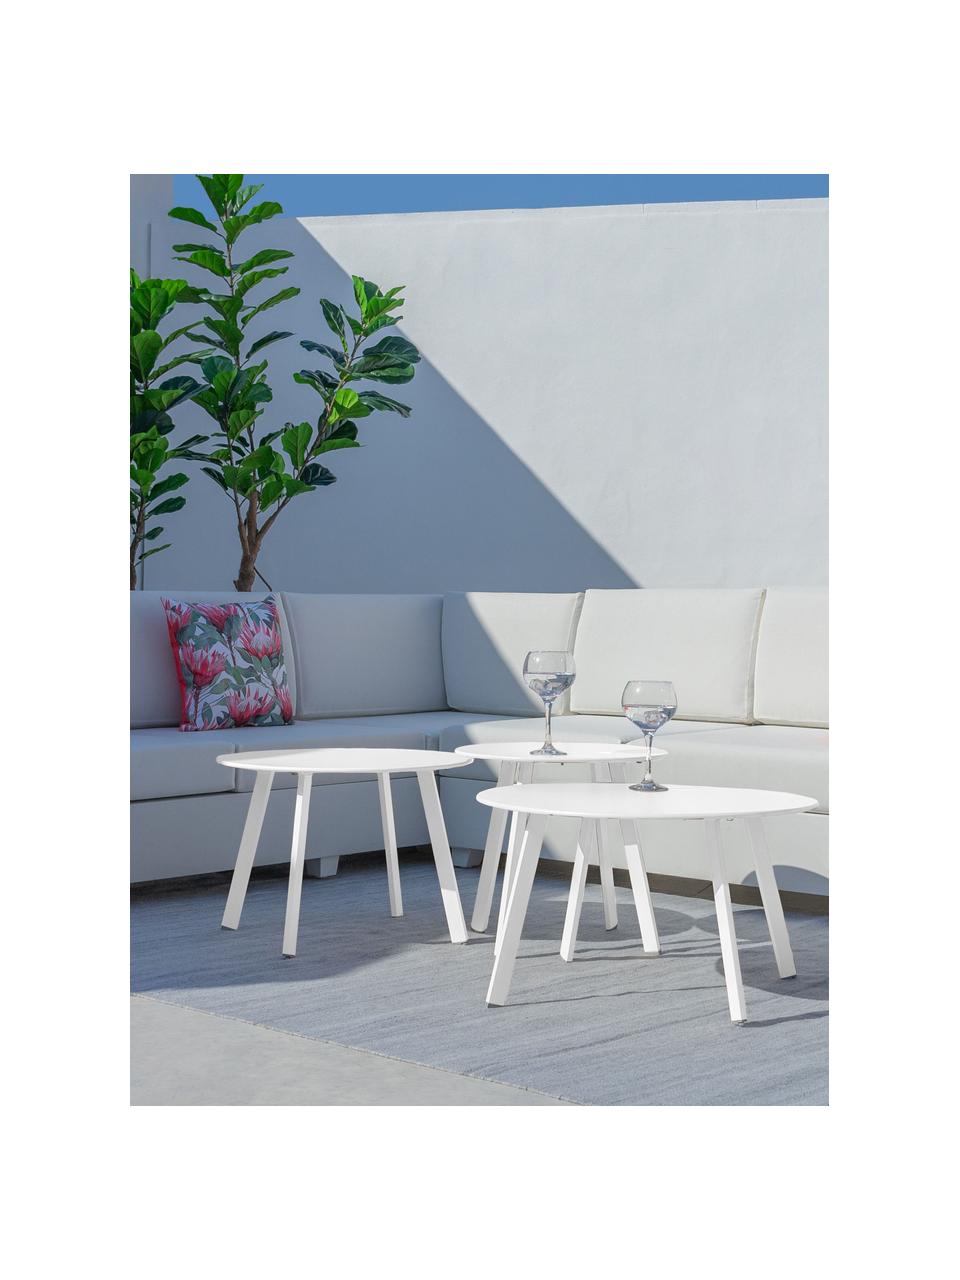 Ogrodowy stolik pomocniczy Marzia, Stal epoksydowana, Biały, Ø 70 x W 40 cm